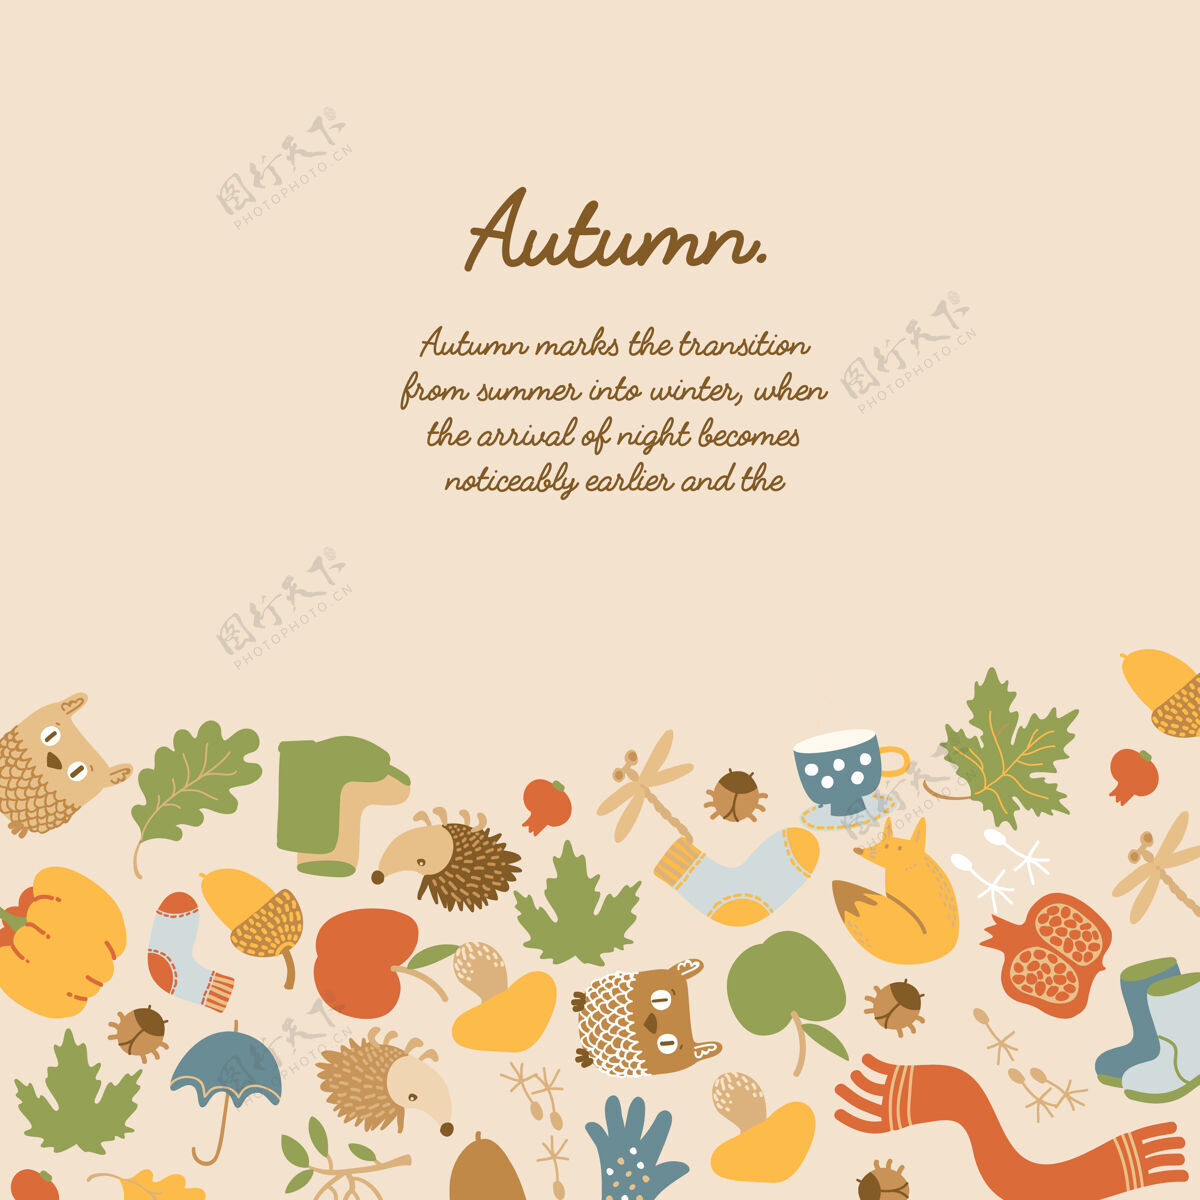 布局彩色抽象秋季模板与文字树叶 动物 苹果 南瓜 衣服 蘑菇 杯子和伞手套花卉苹果